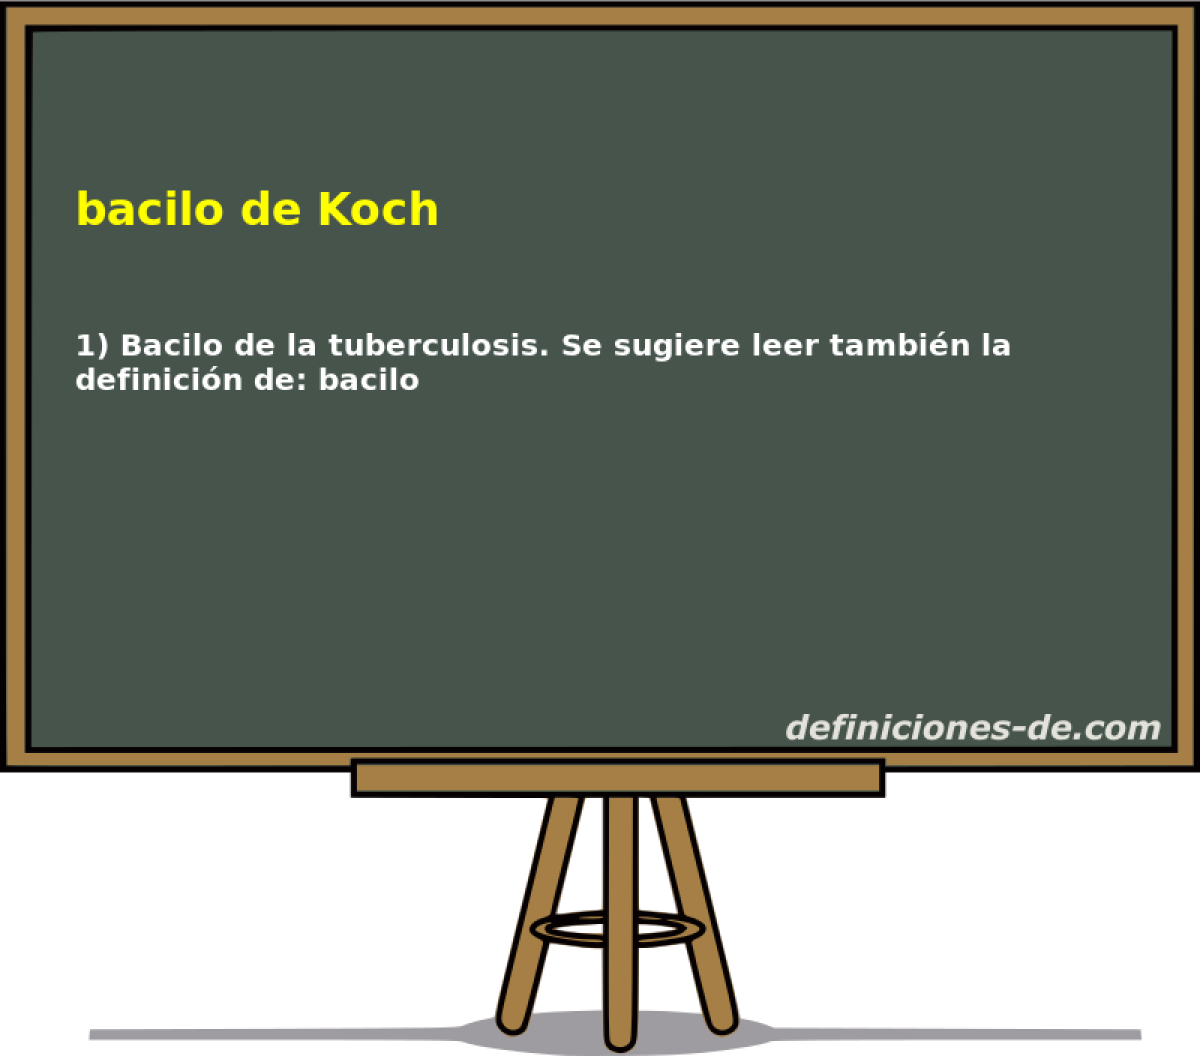 bacilo de Koch 